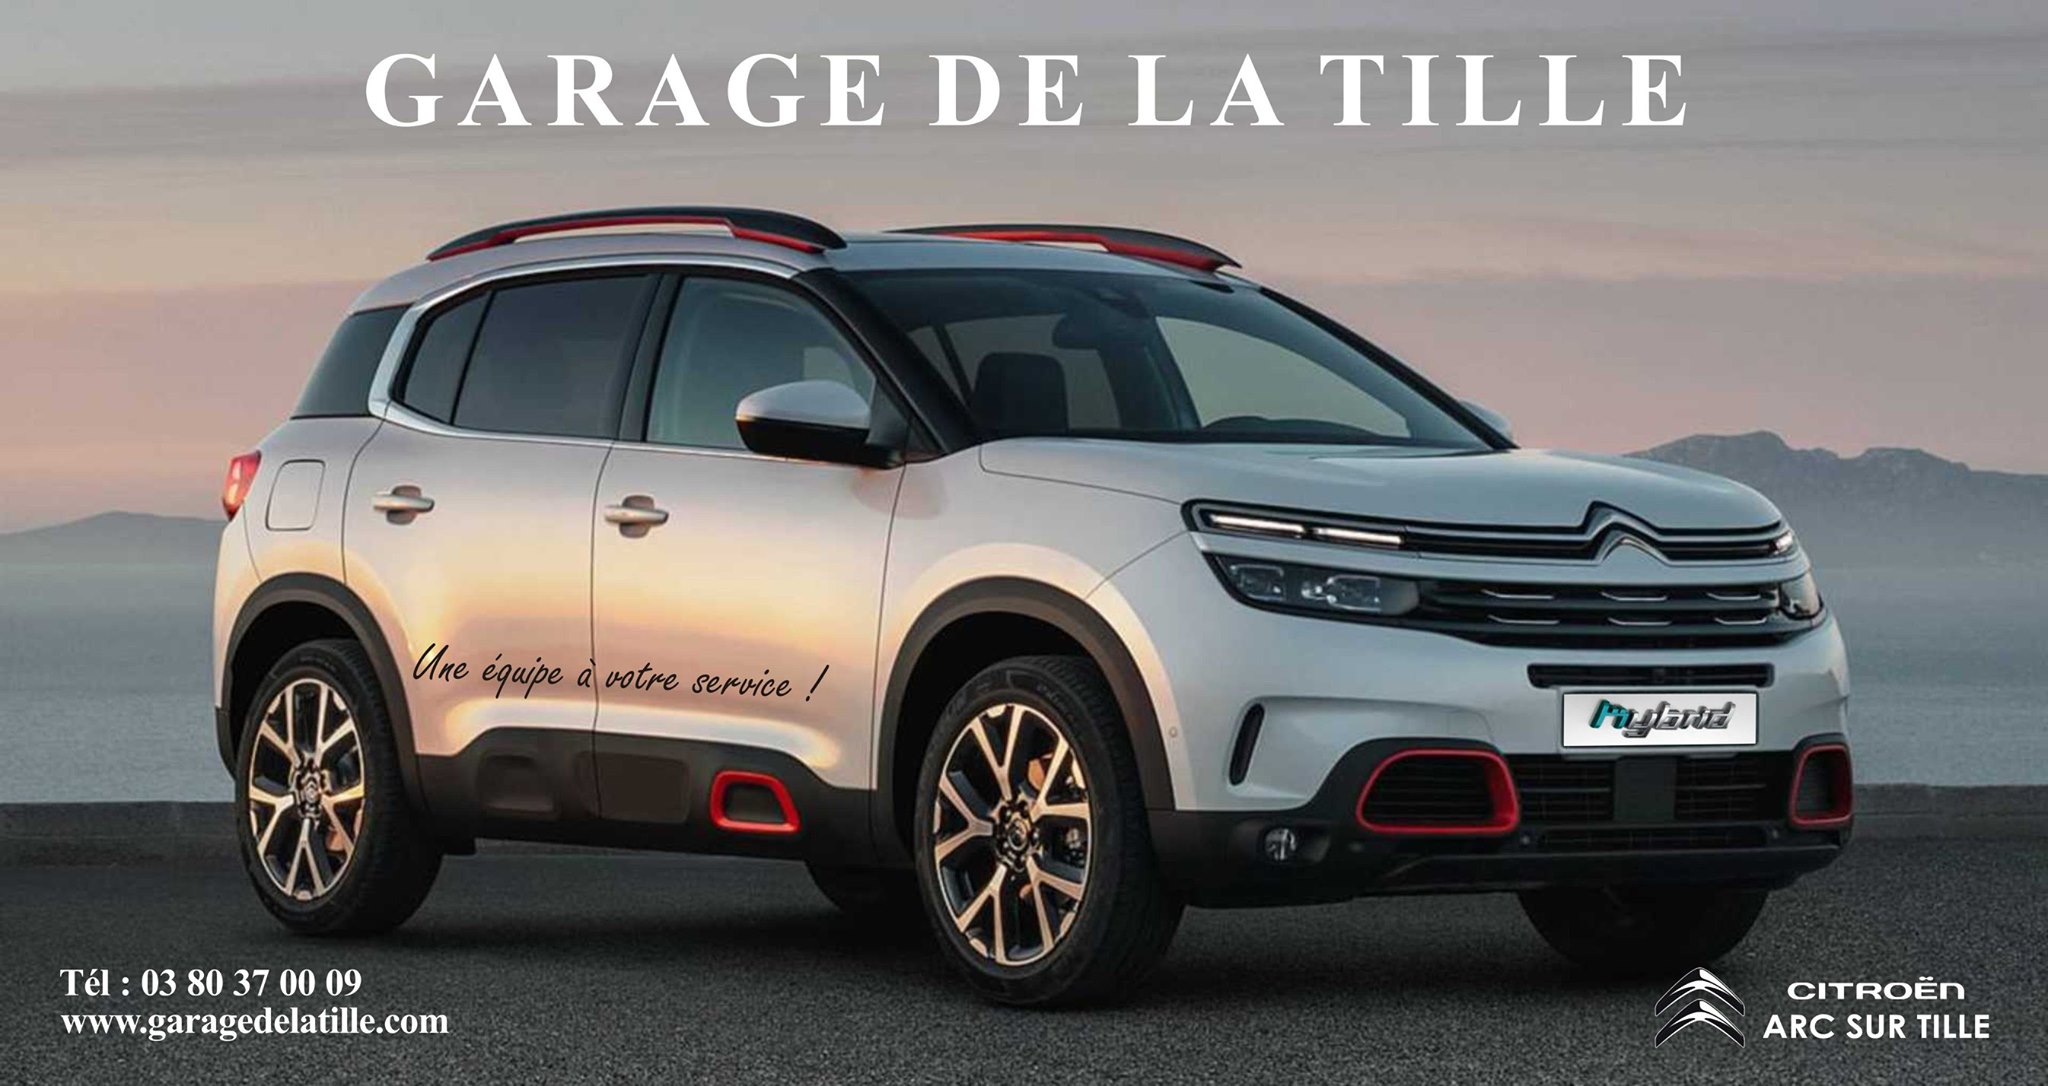 GARAGE DE LA TILLE - Vente de véhicules neufs et occasions récentes à Arc sur Tille (21)